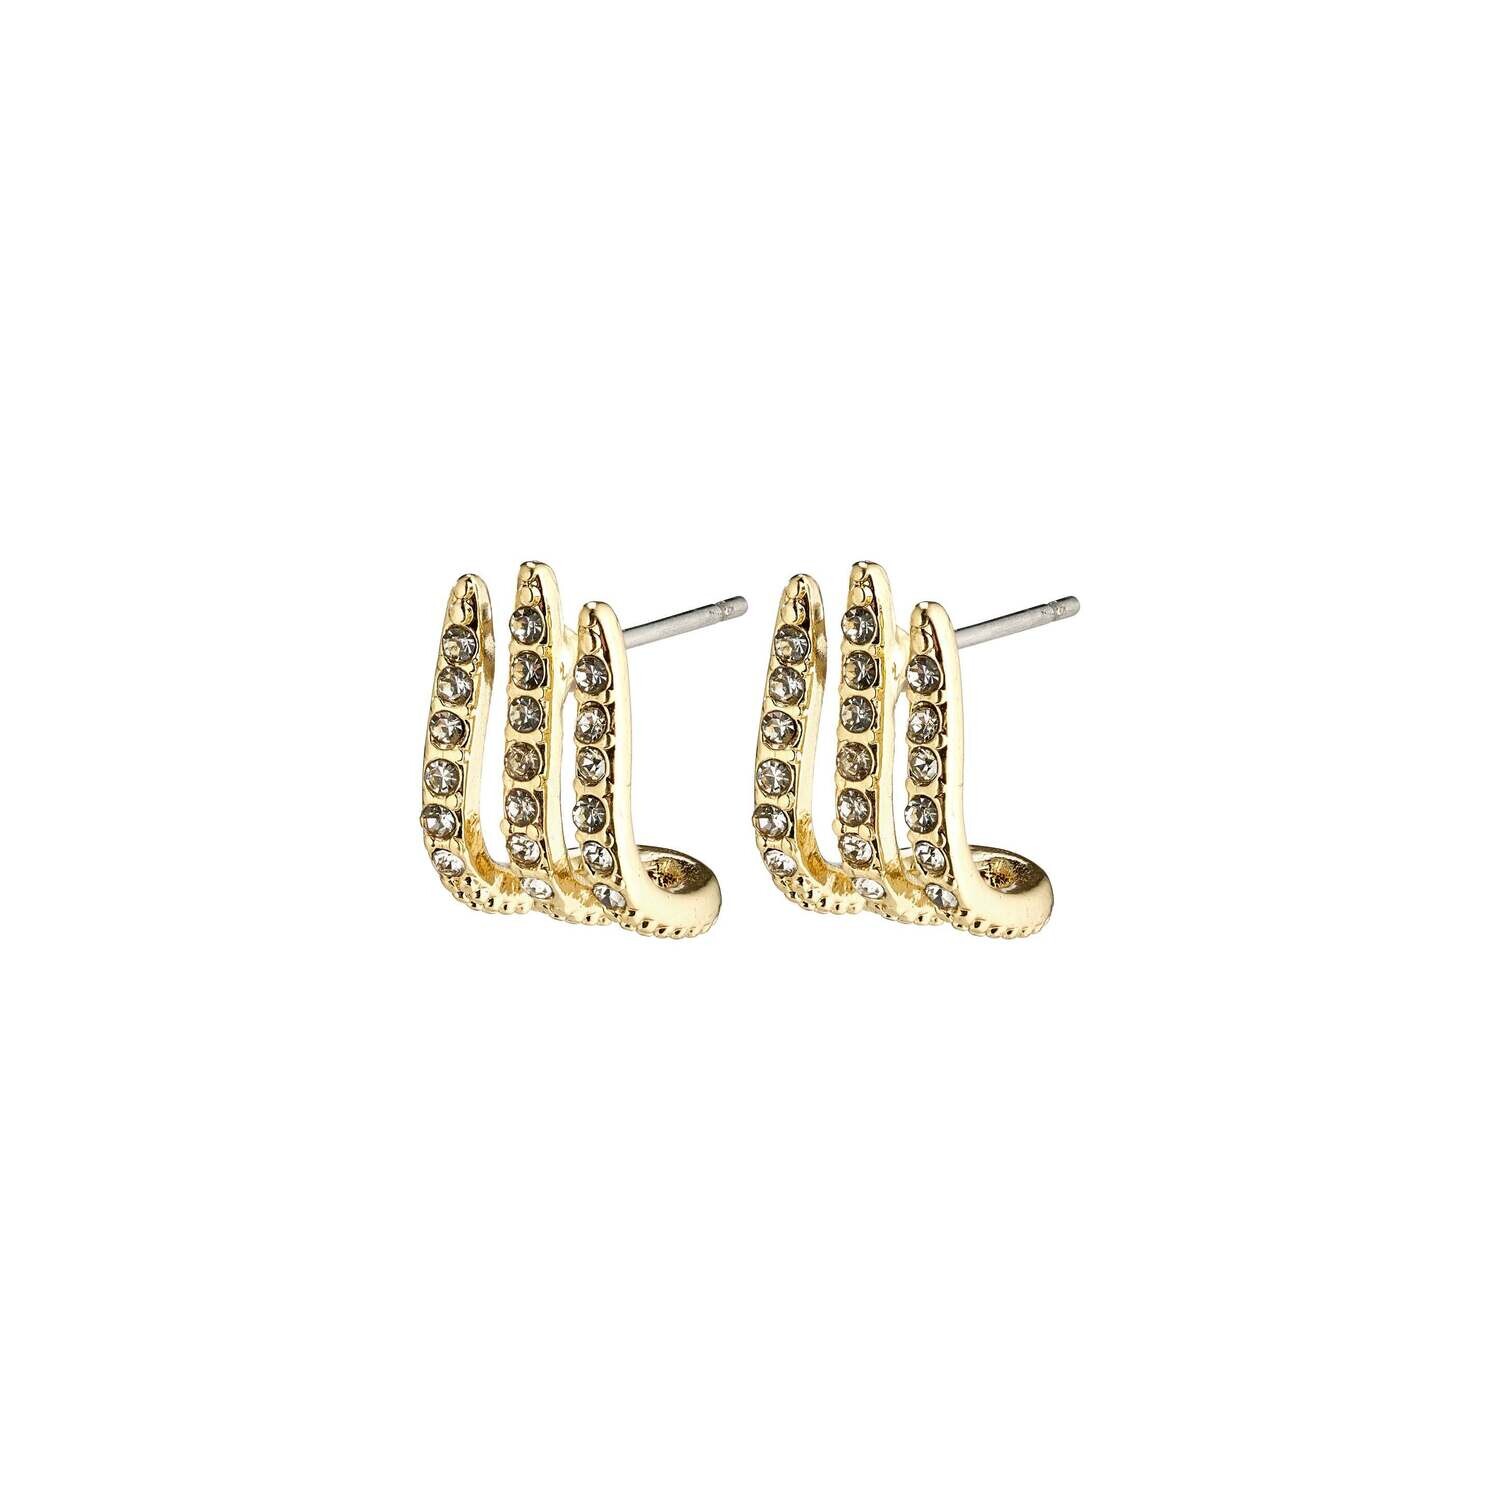 FINAL SALE Kaylee Earrings Gold Plated Crystal